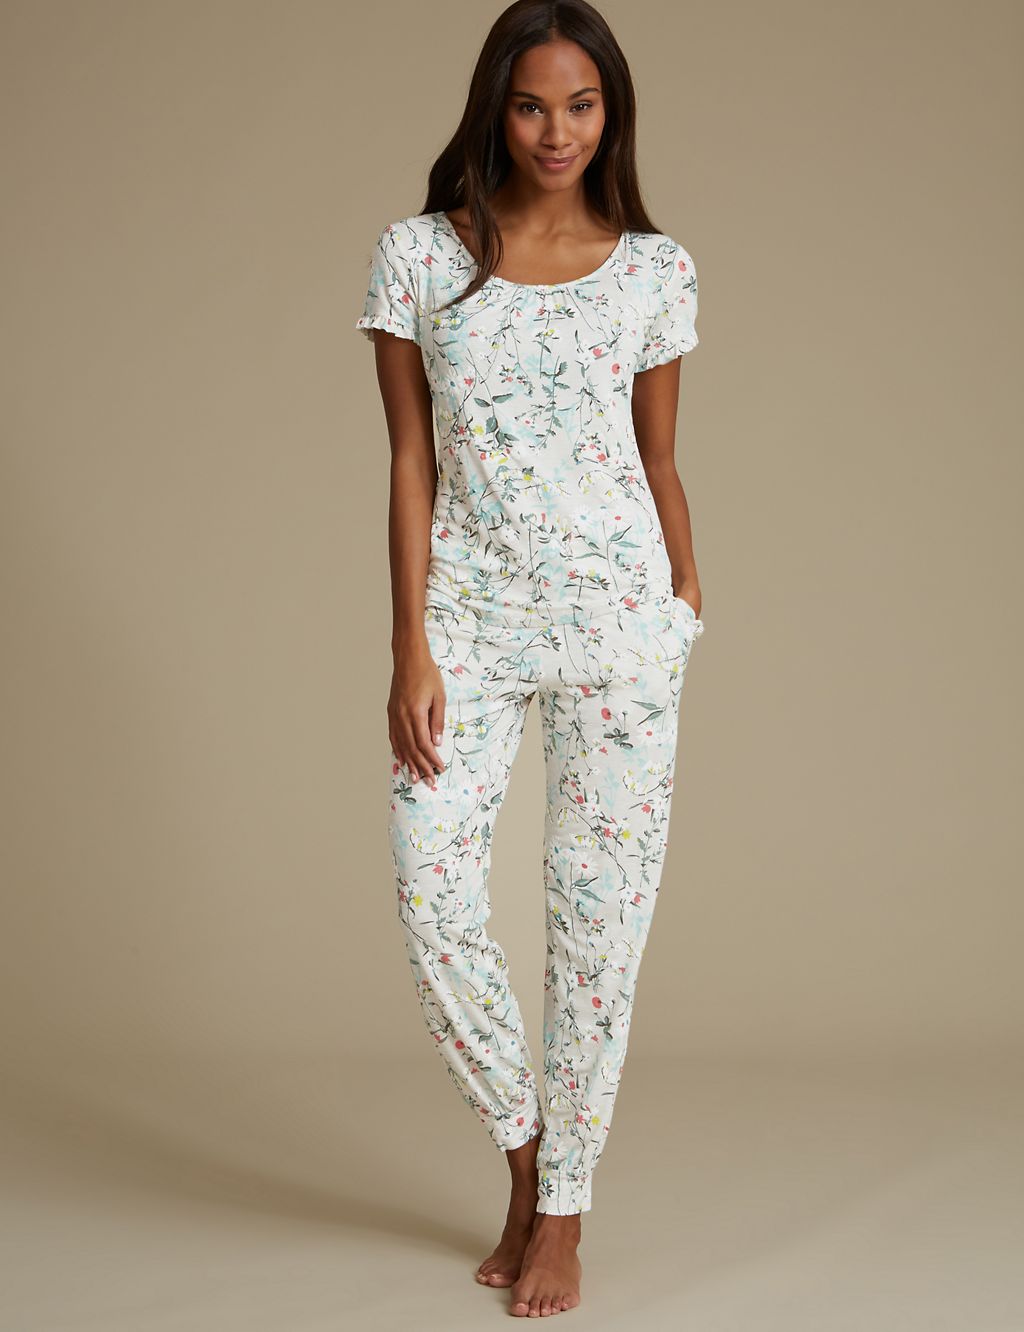 Floral Print Short Sleeve Pyjama Top 4 of 6